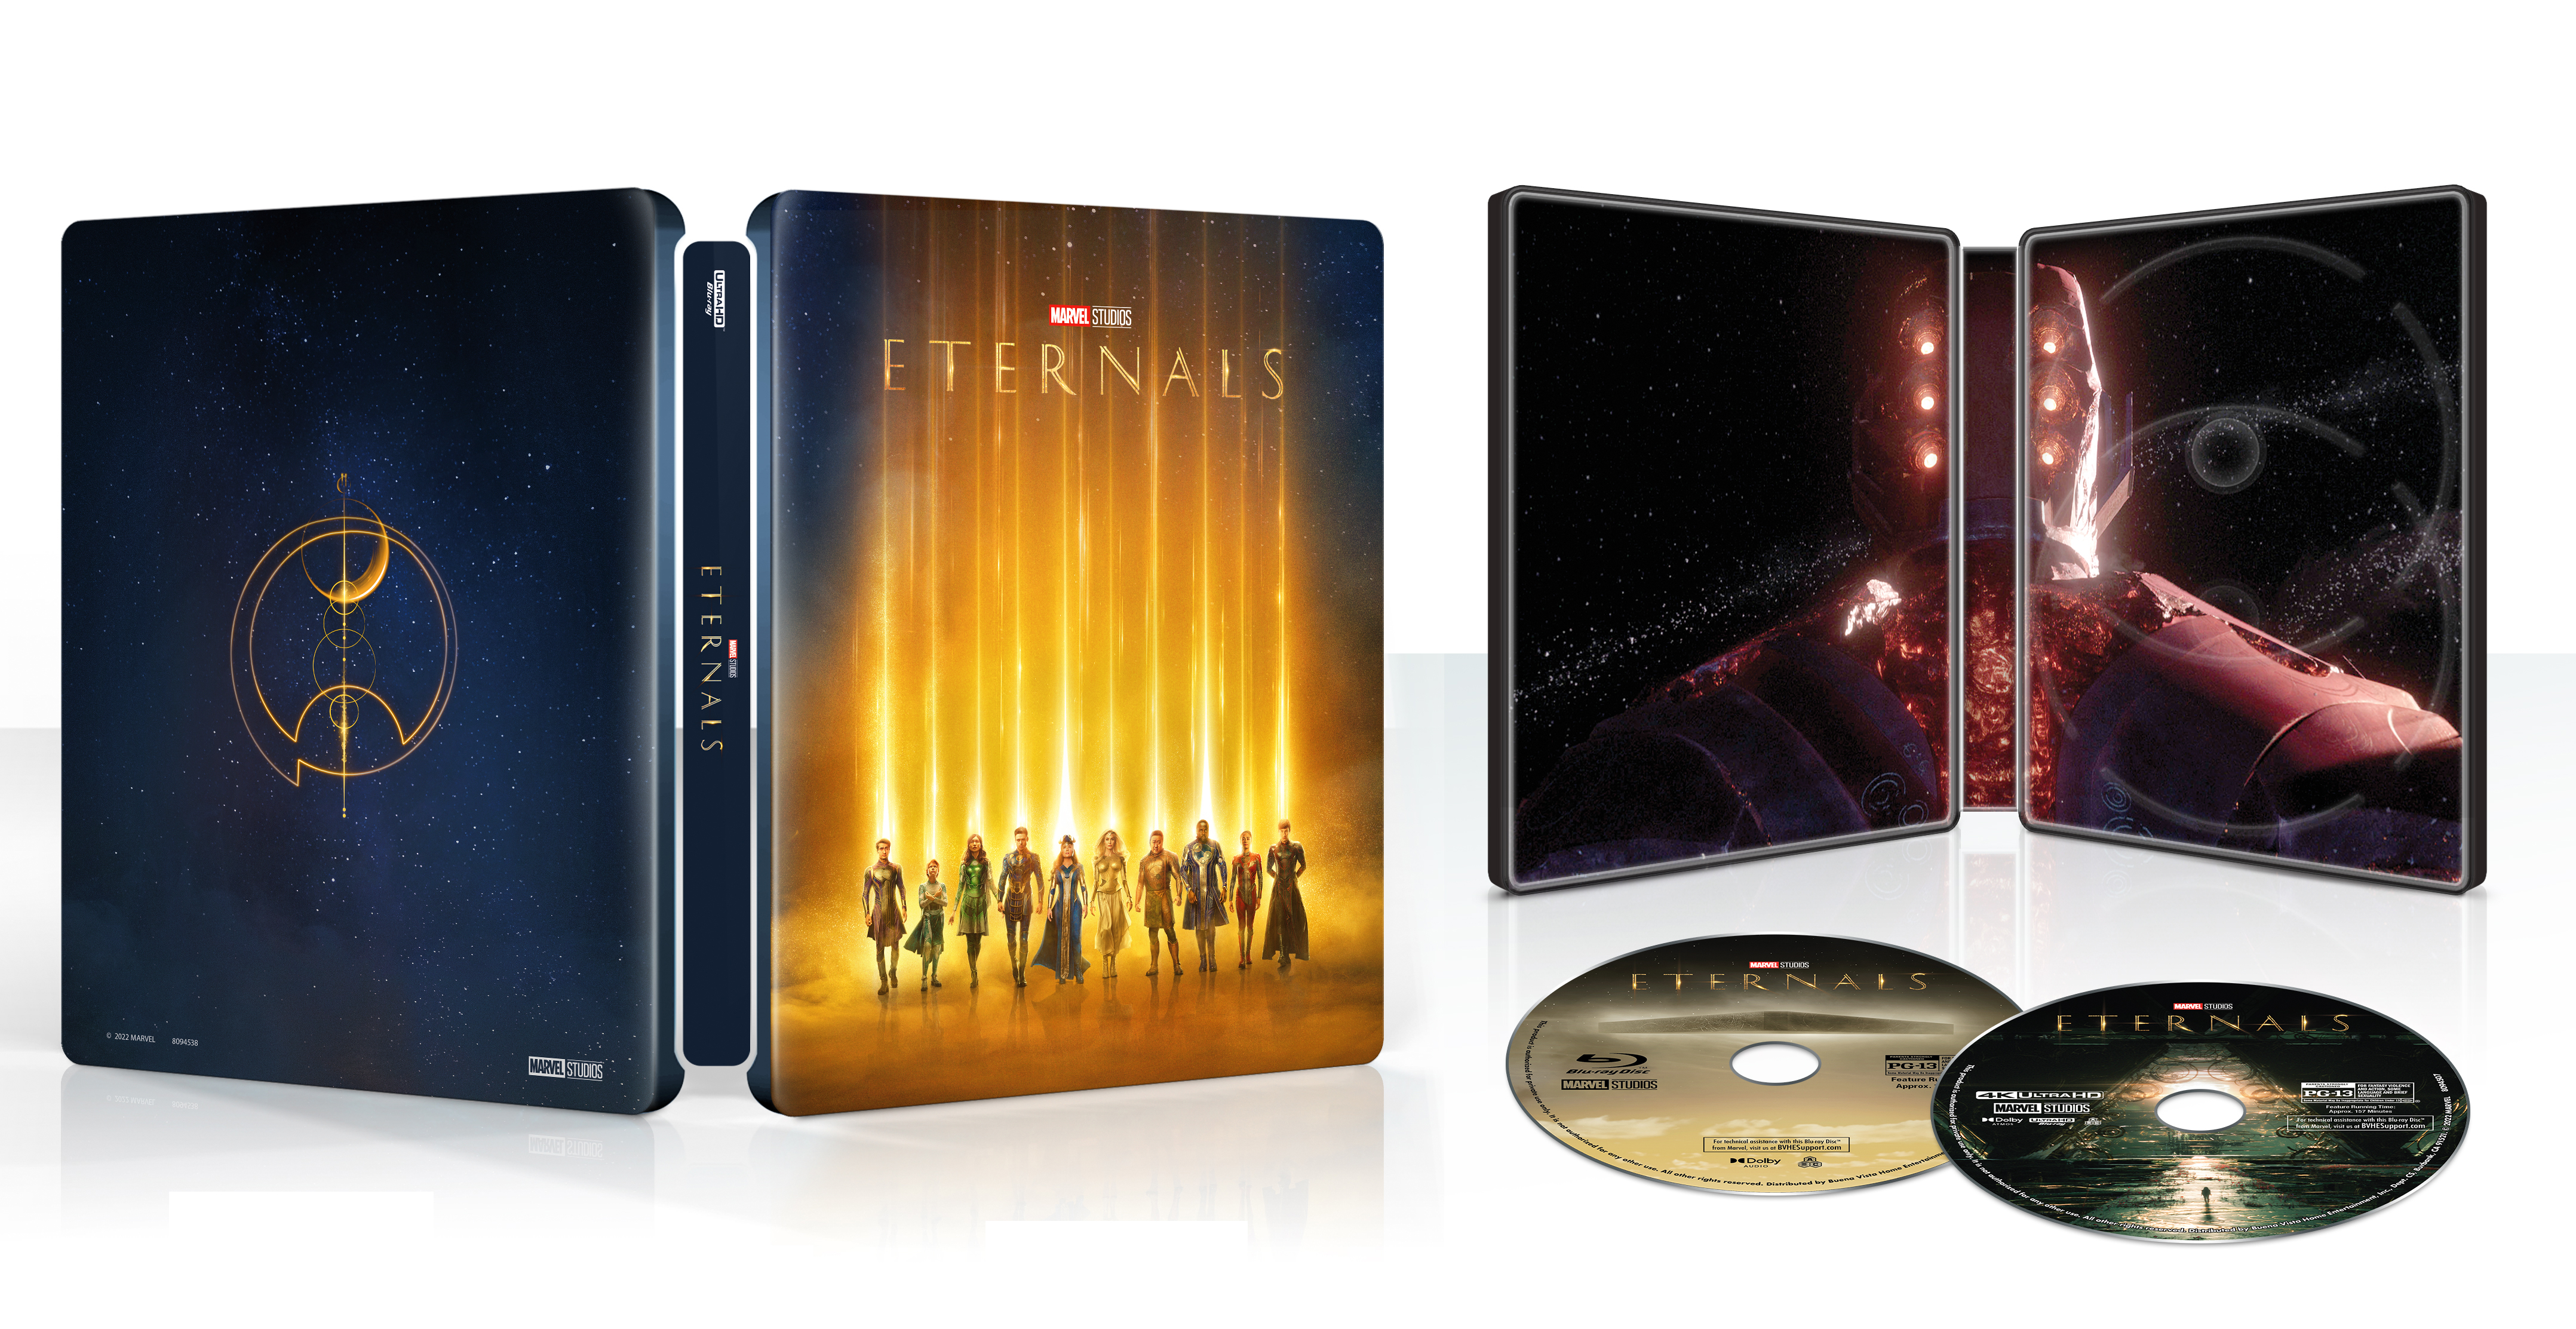 Eternals [SteelBook] [Includes Digital Copy] [4K Ultra HD Blu-ray/Blu-ray] [ Only @ Best Buy] [2021] - Best Buy